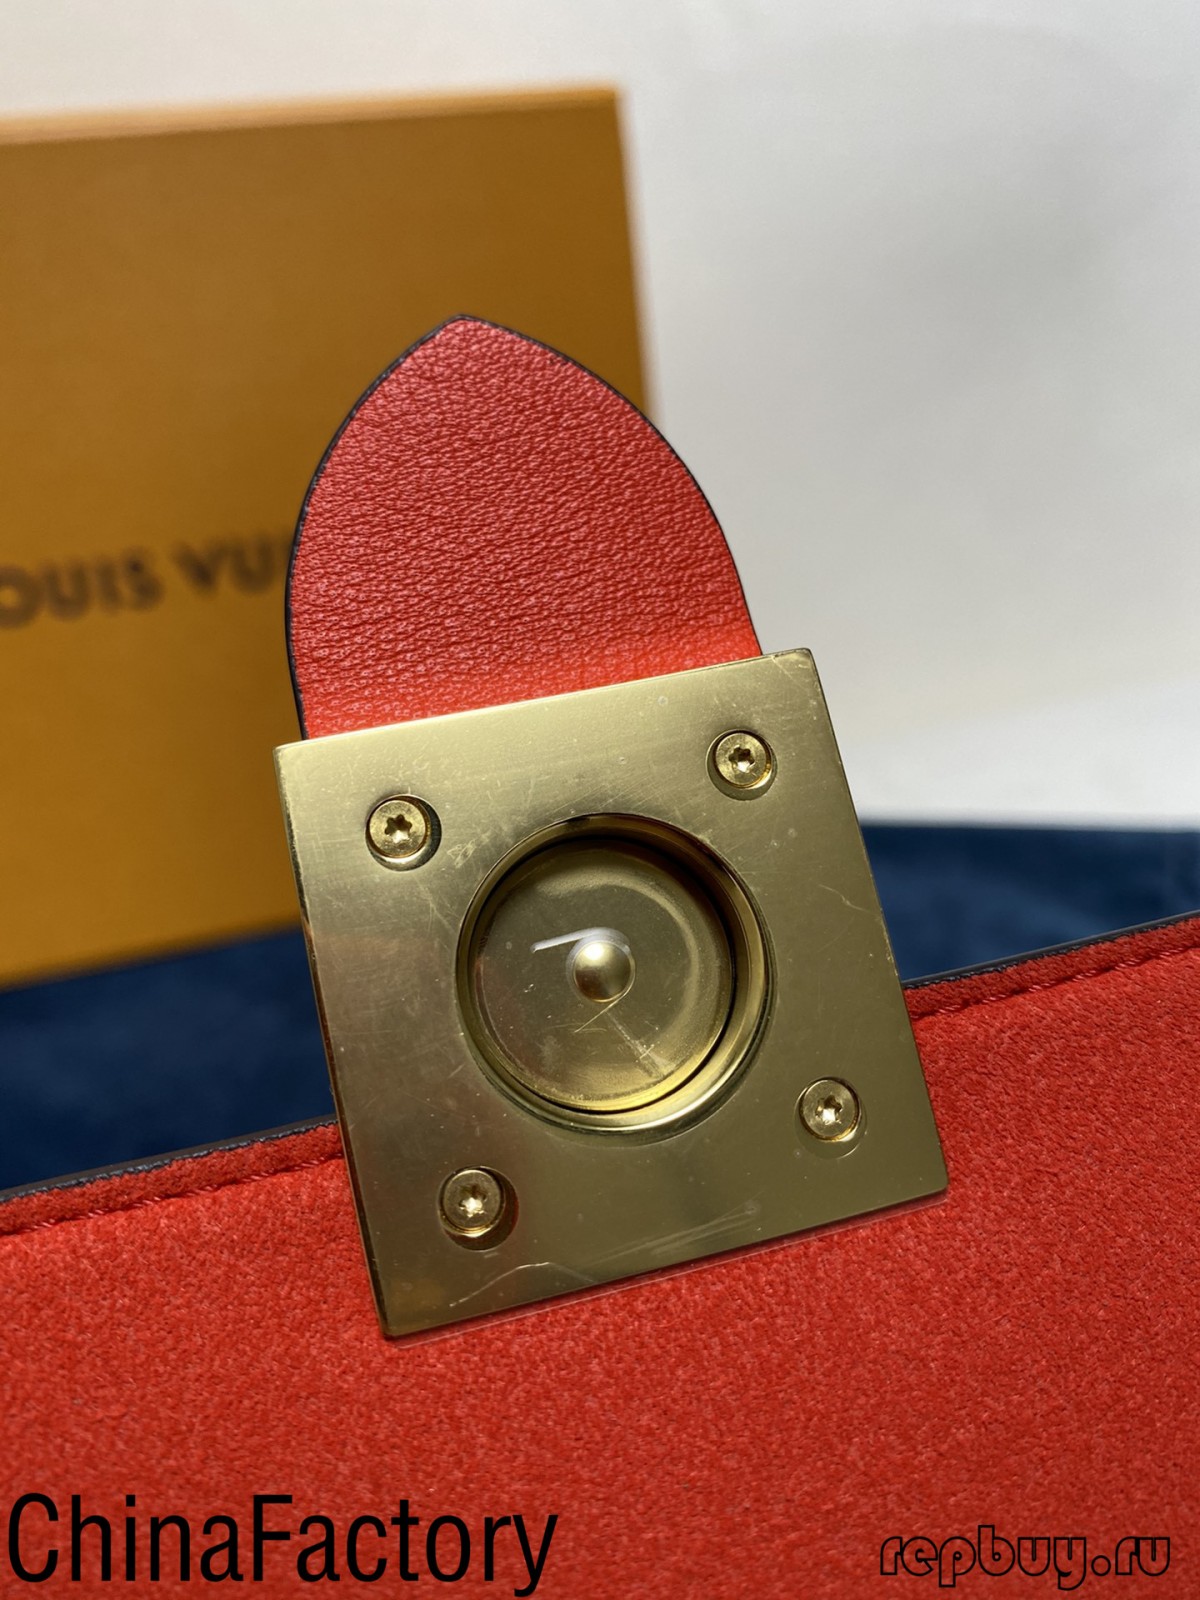 Sommige aaa replika sakke resensies om te deel (2022 nuwe uitgawe)-Beste kwaliteit vals Louis Vuitton sak aanlyn winkel, replika ontwerper sak ru